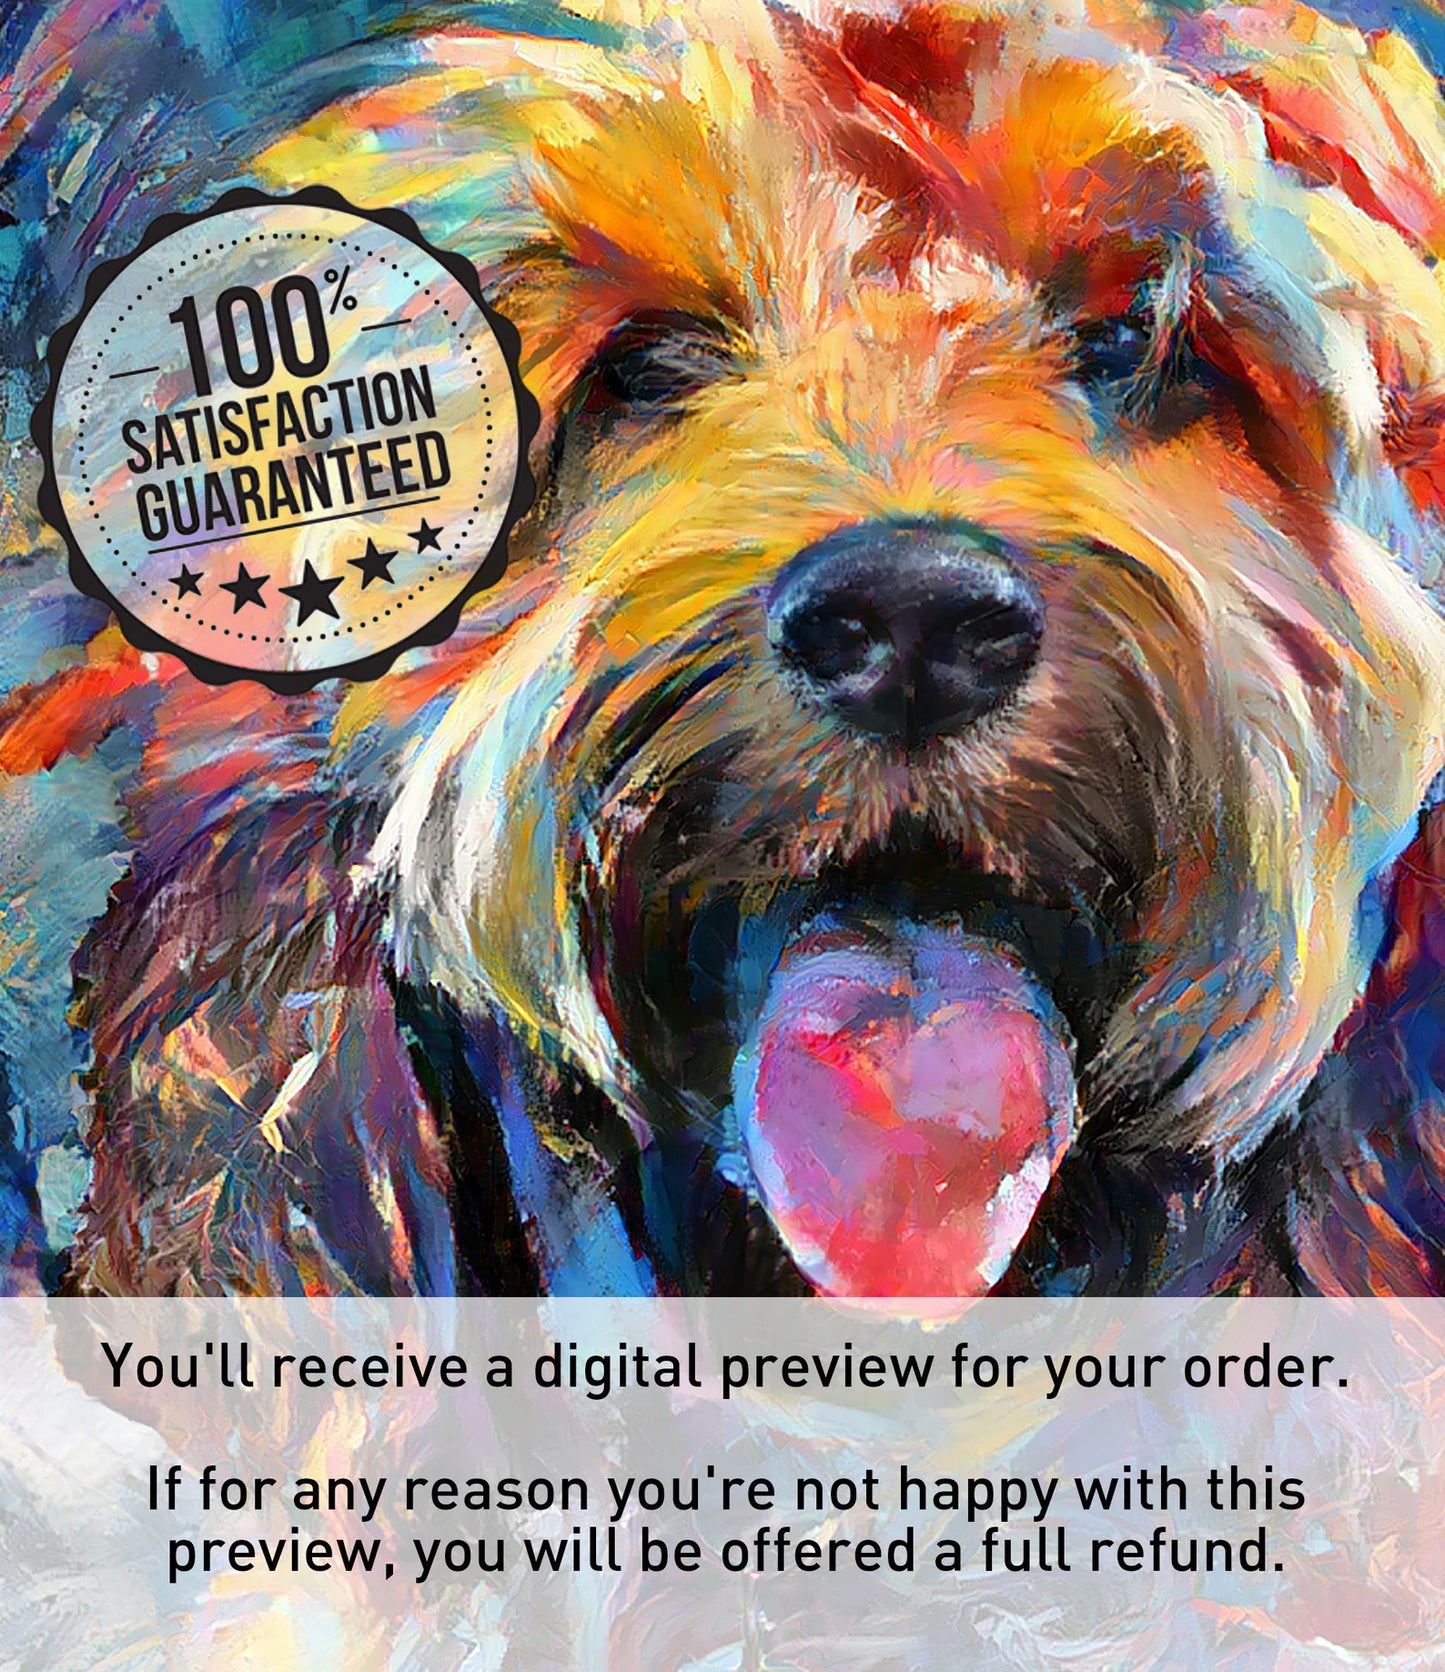 Colourful Pet Portrait Canvas | Commission Pet Modern Wall Art